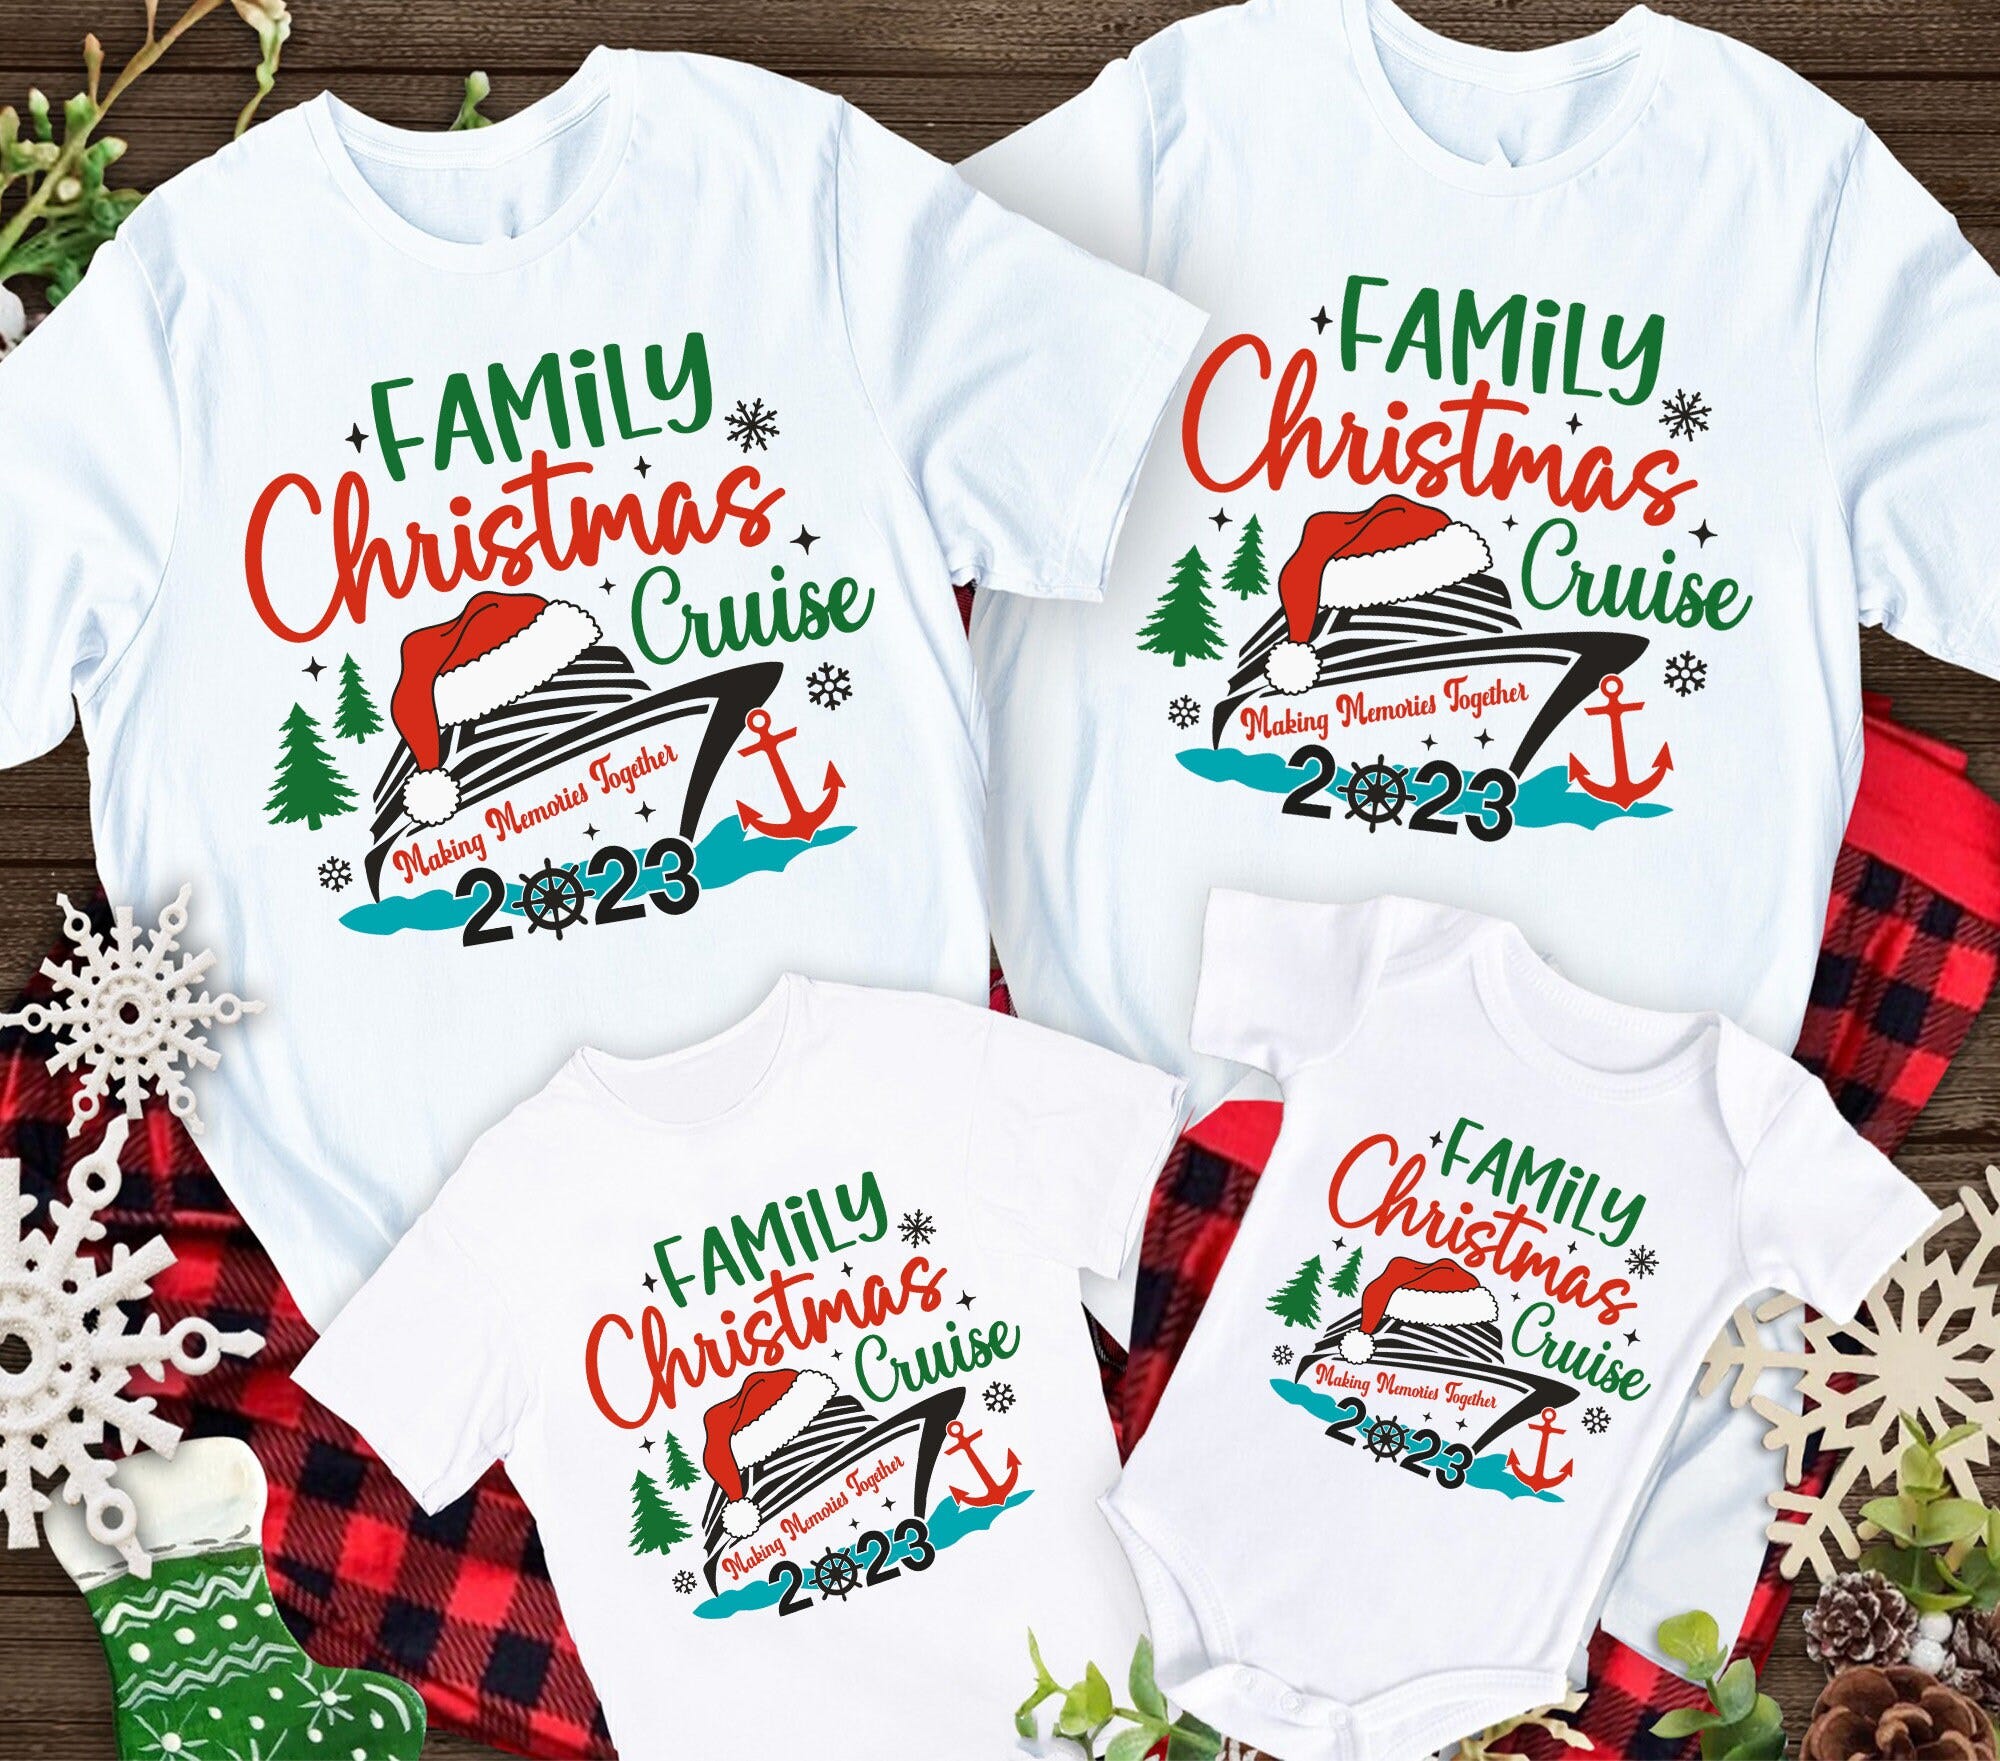 Family Christmas Cruise Shirt, Christmas Cruise Vacation Shirt, Funny Vacation Cruise Shirt, Christmas Holiday Shirt, Xmas Cruise Shirt